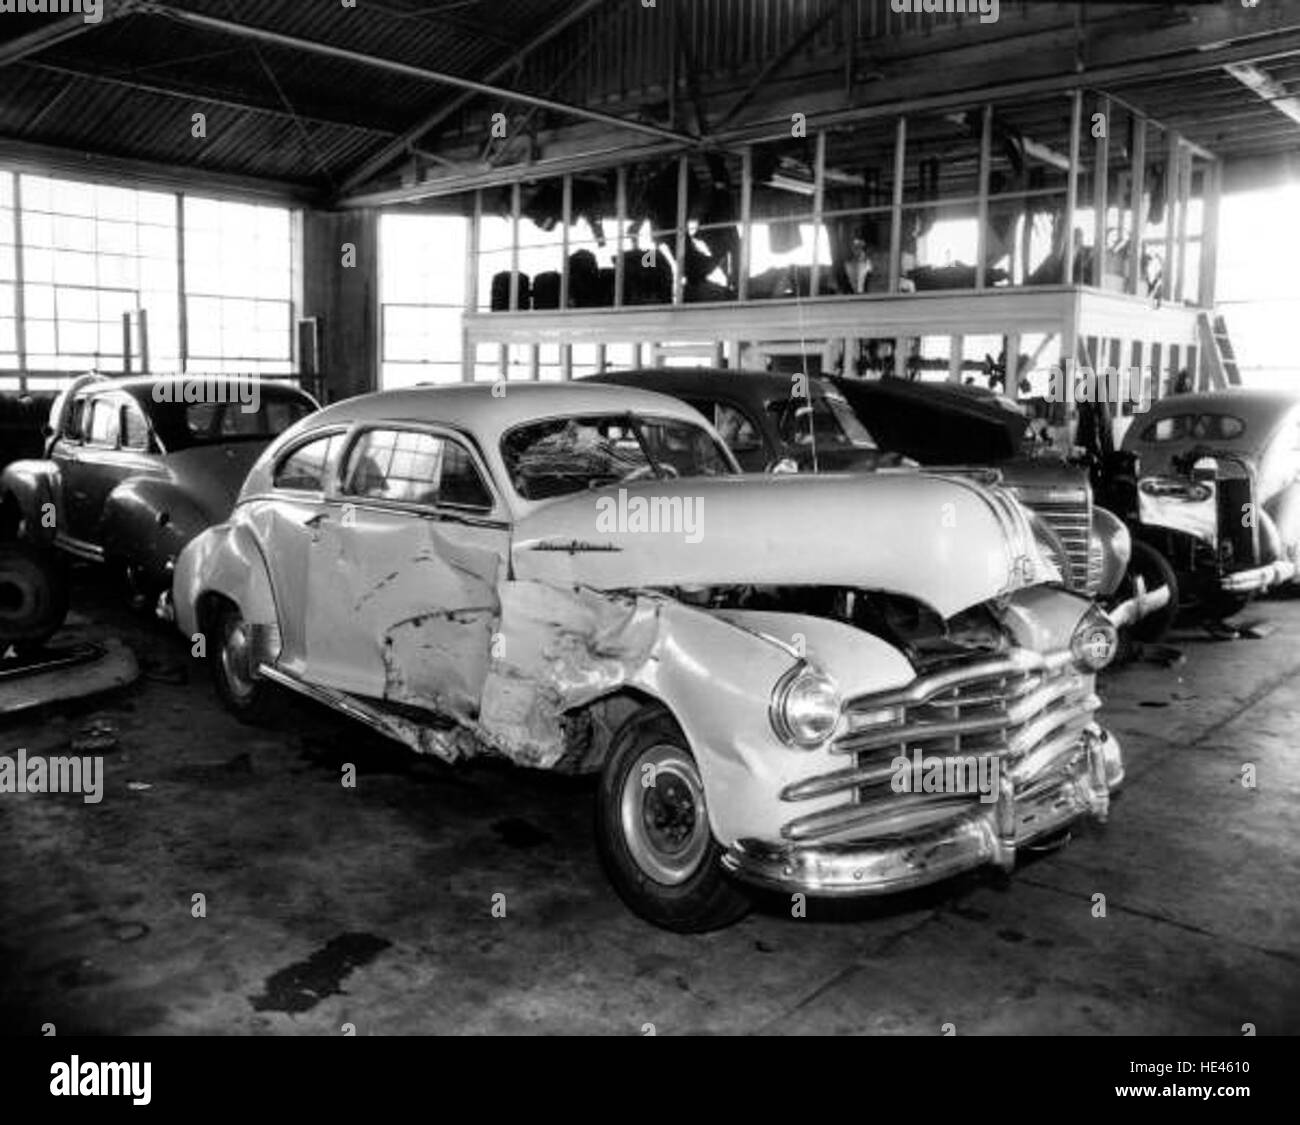 Damaged car - Jacksonville Stock Photo